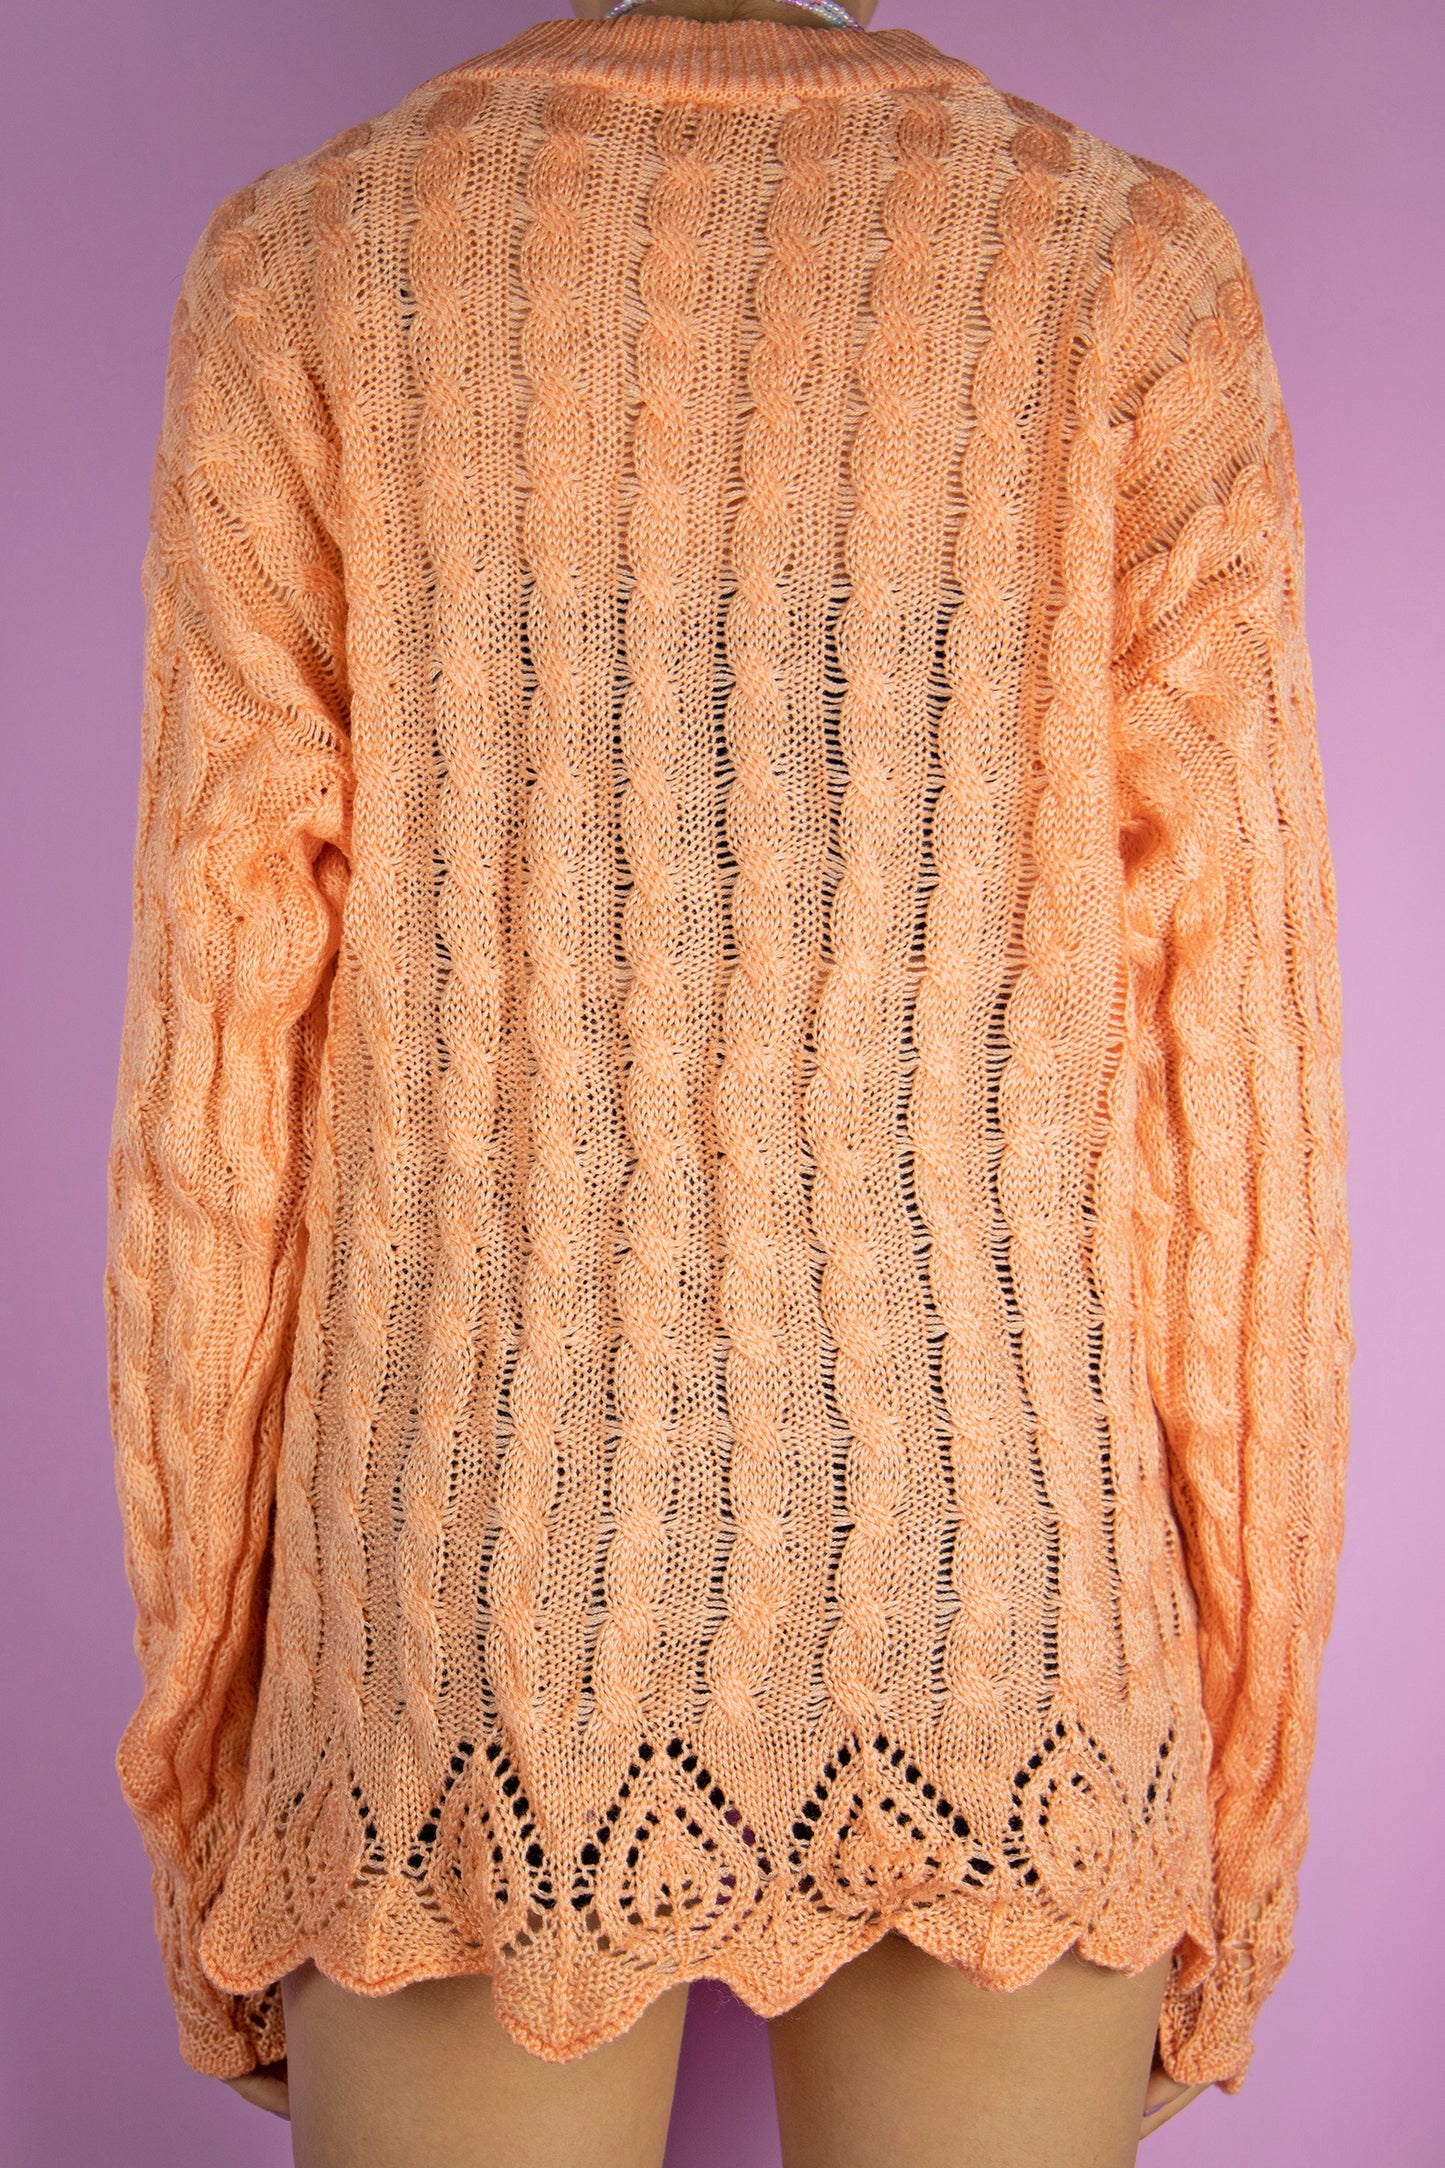 Vintage 80s Orange Cable Knit Sweater - M/L